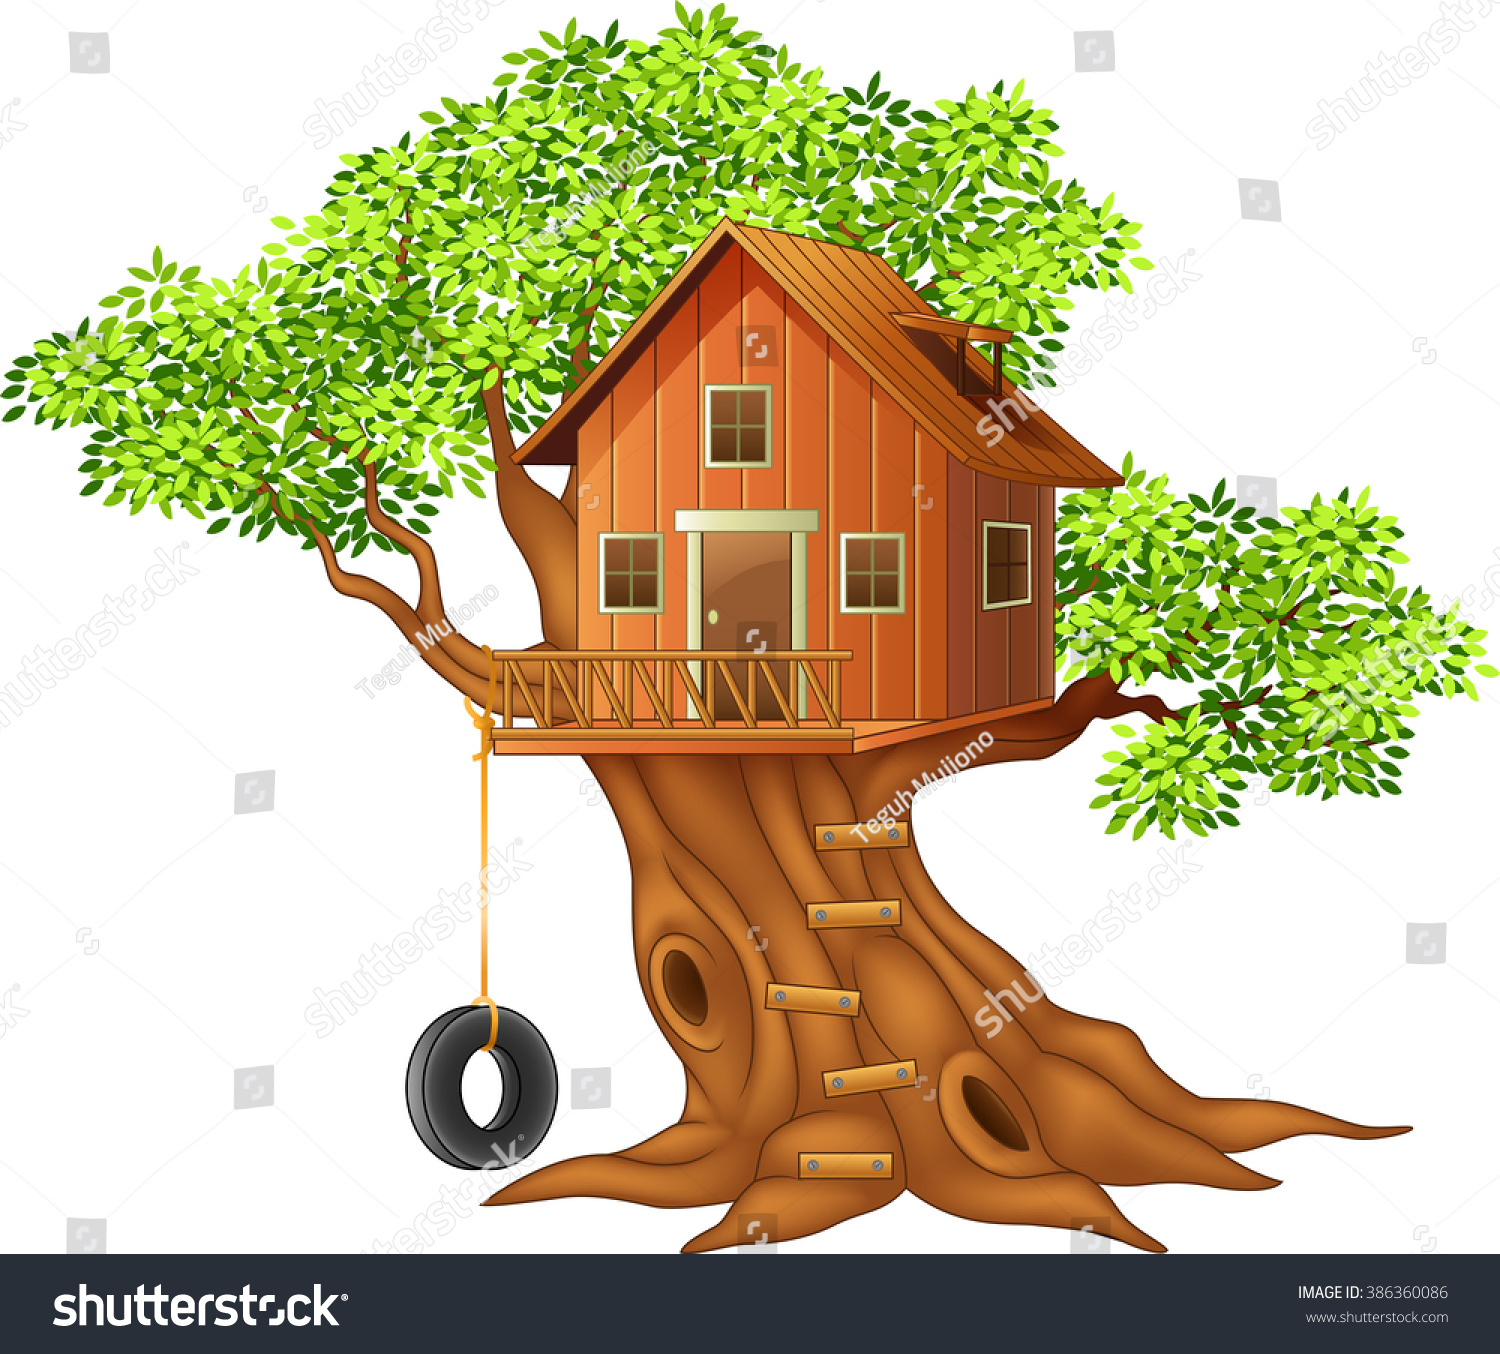 tree house clipart - photo #38